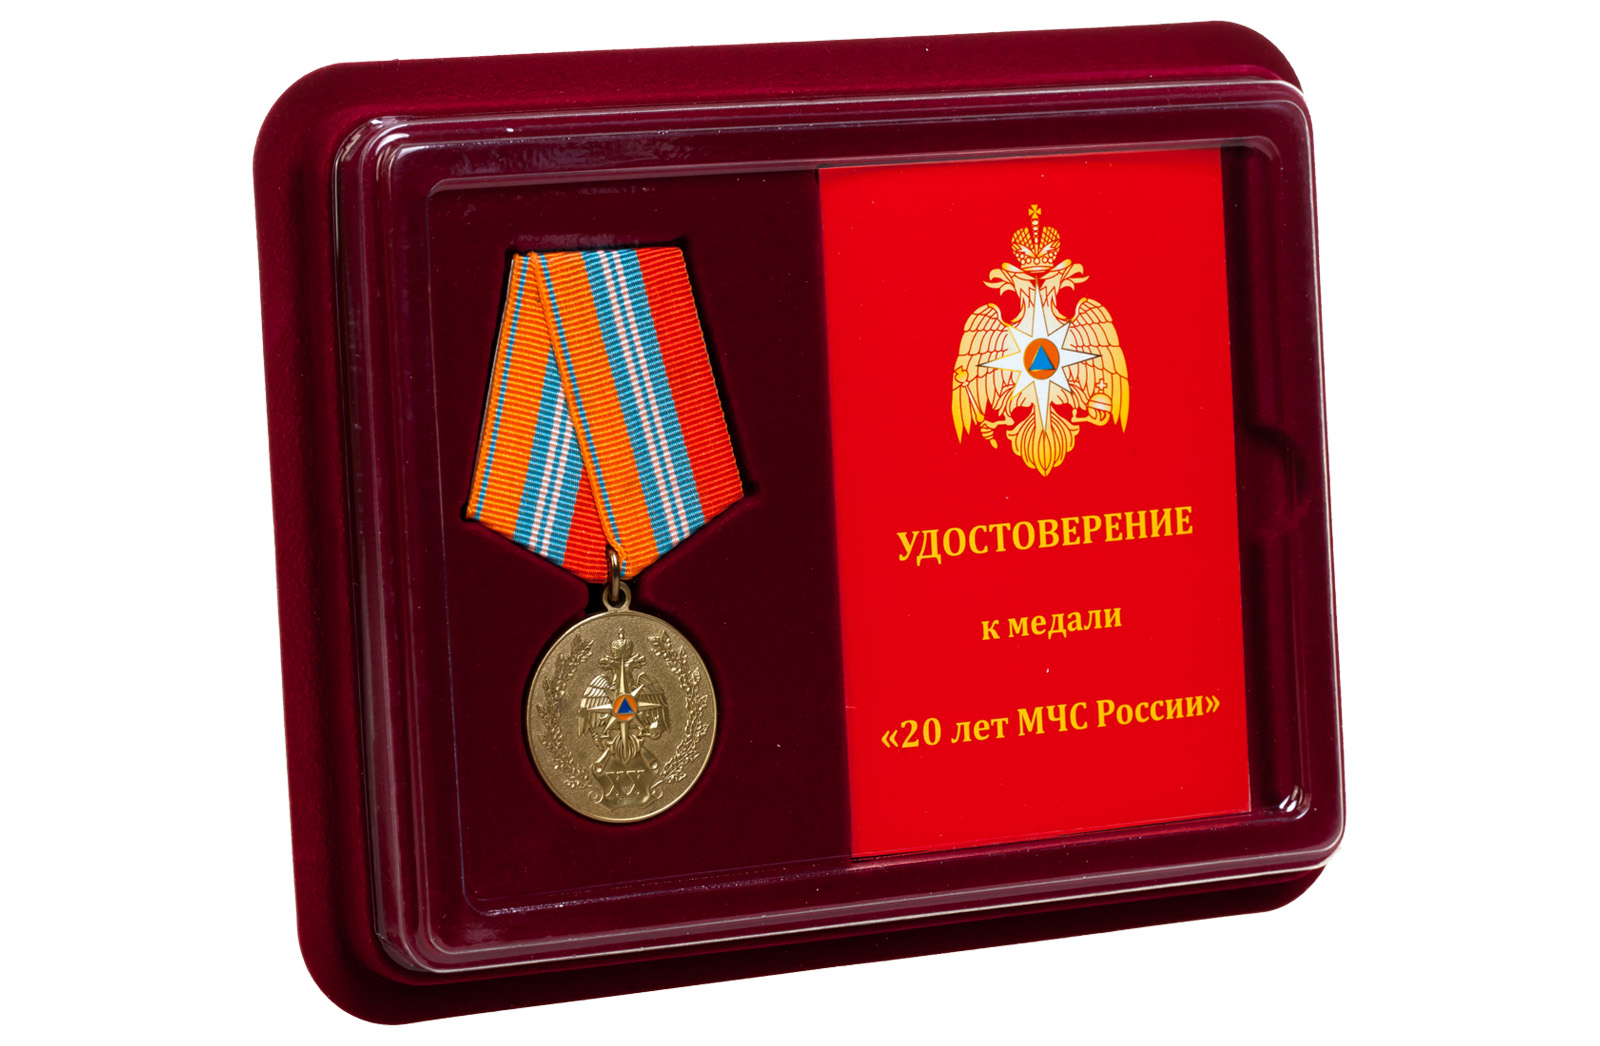 Купить памятную медаль 20 лет МЧС России в подарок мужчине